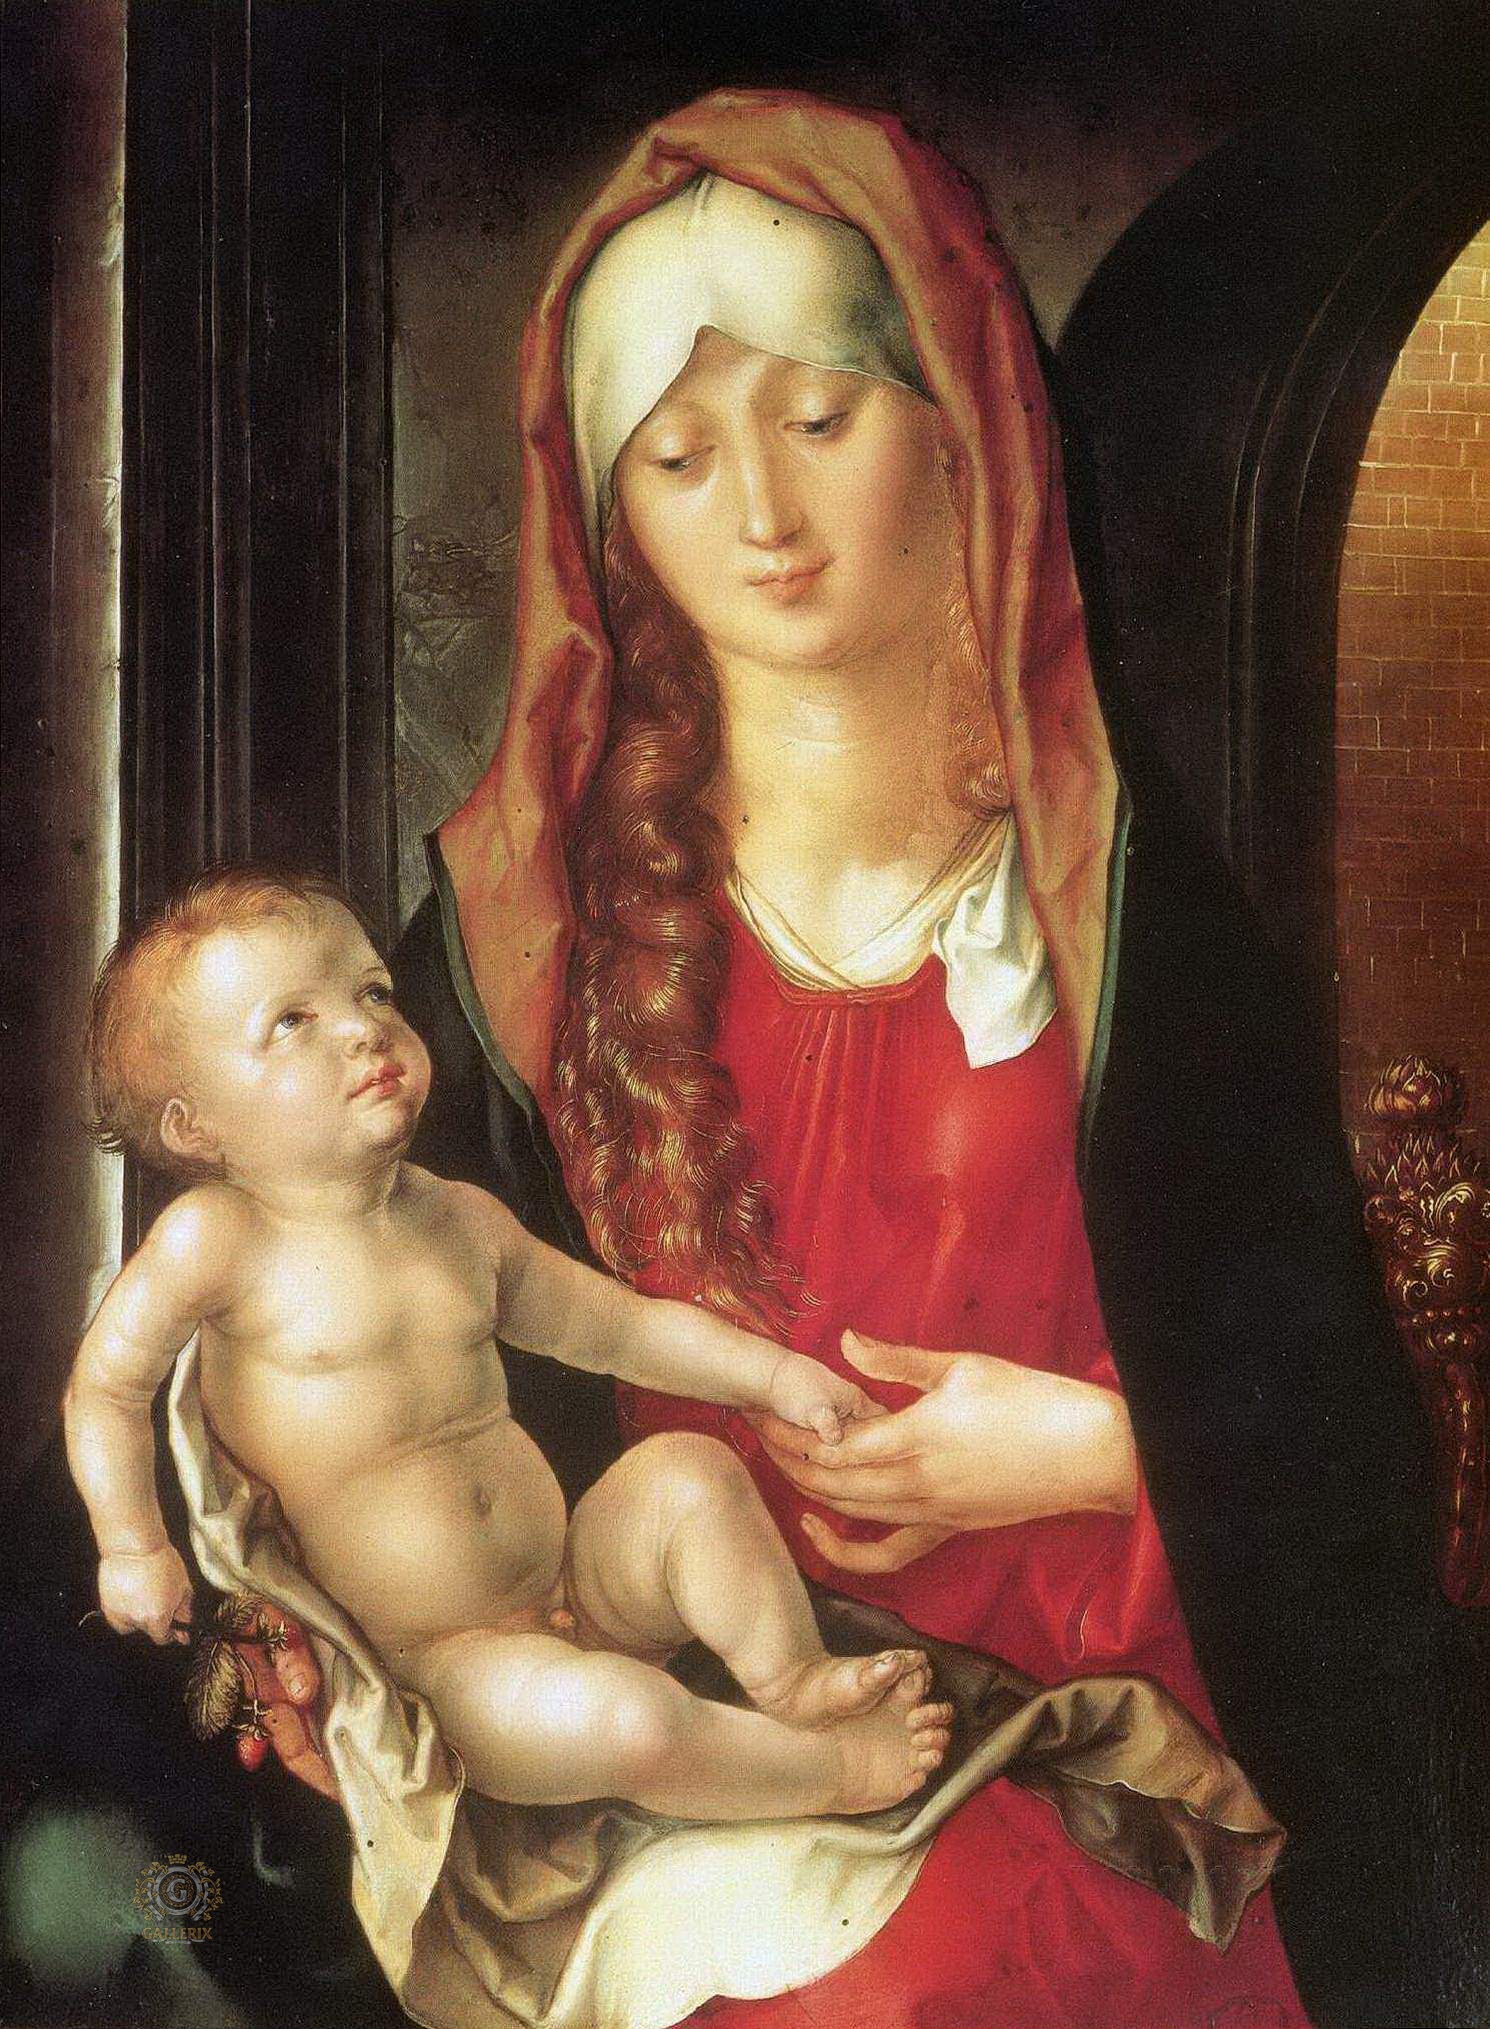 Альбрехт Дюрер. "Мадонна с Младенцем перед аркой". 1494-1499. Фонд Маяньяни-Рокка, Траверсетоло.